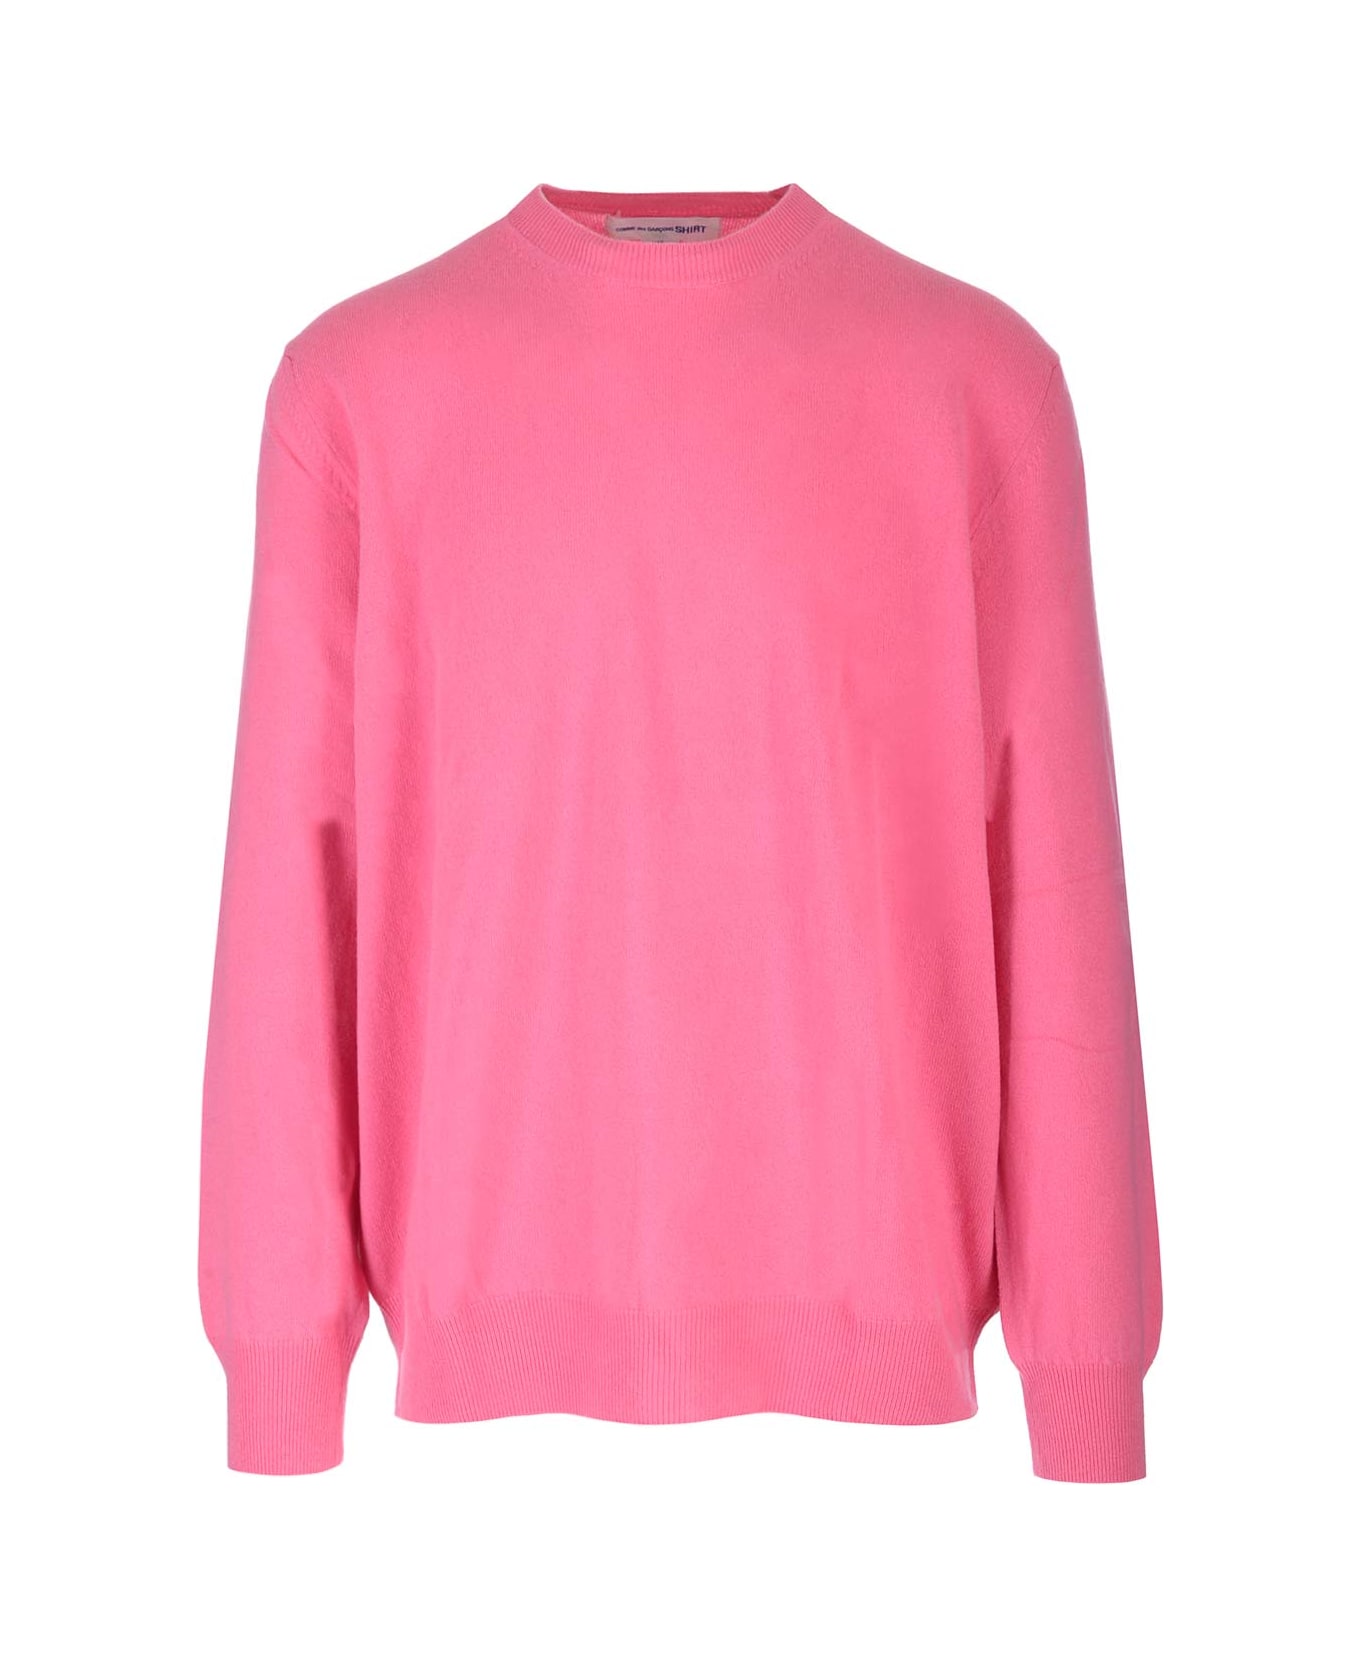 Comme des Garçons Shirt Pink Wool Sweater - Pink